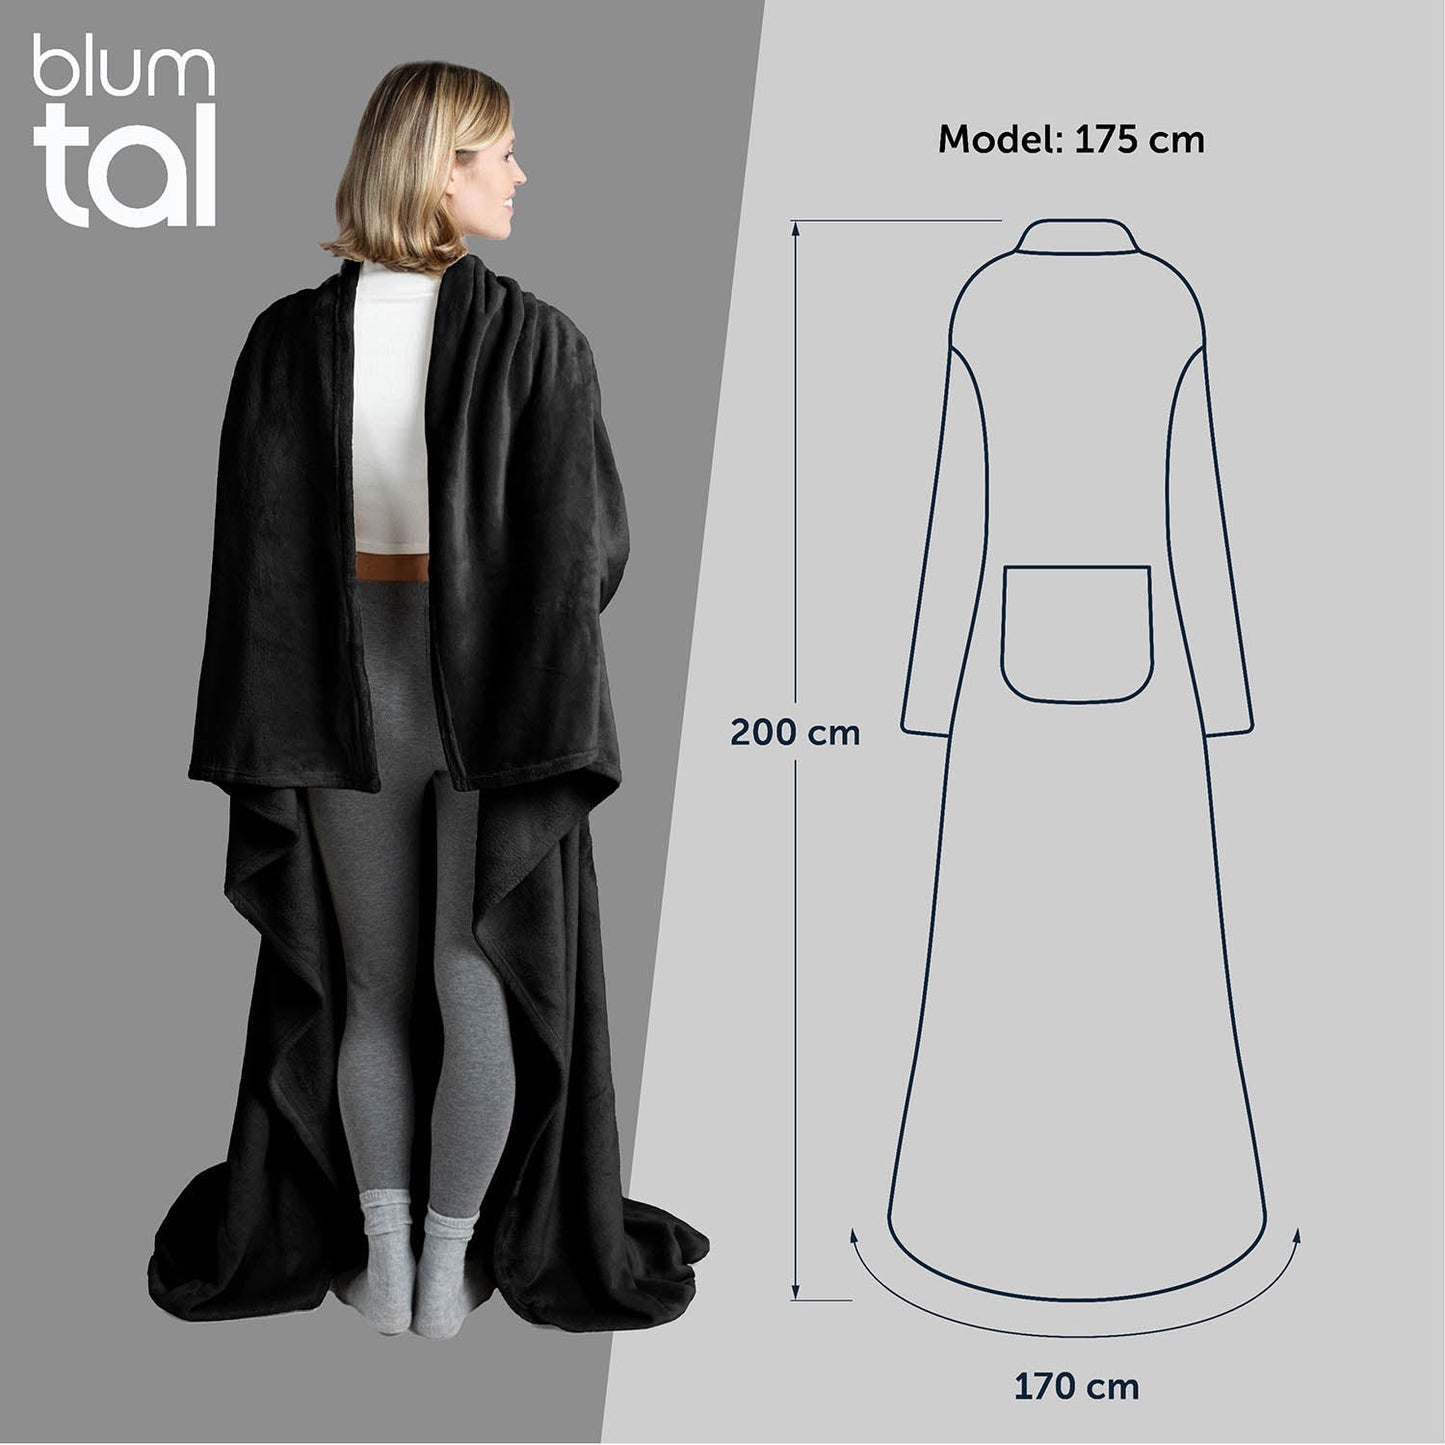 Frau von hinten in einem schwarz flauschigen Kleidungsstück neben einer Skizze mit Maßangaben zur Größe des Kleidungsstücks und der Körpergröße des Models.